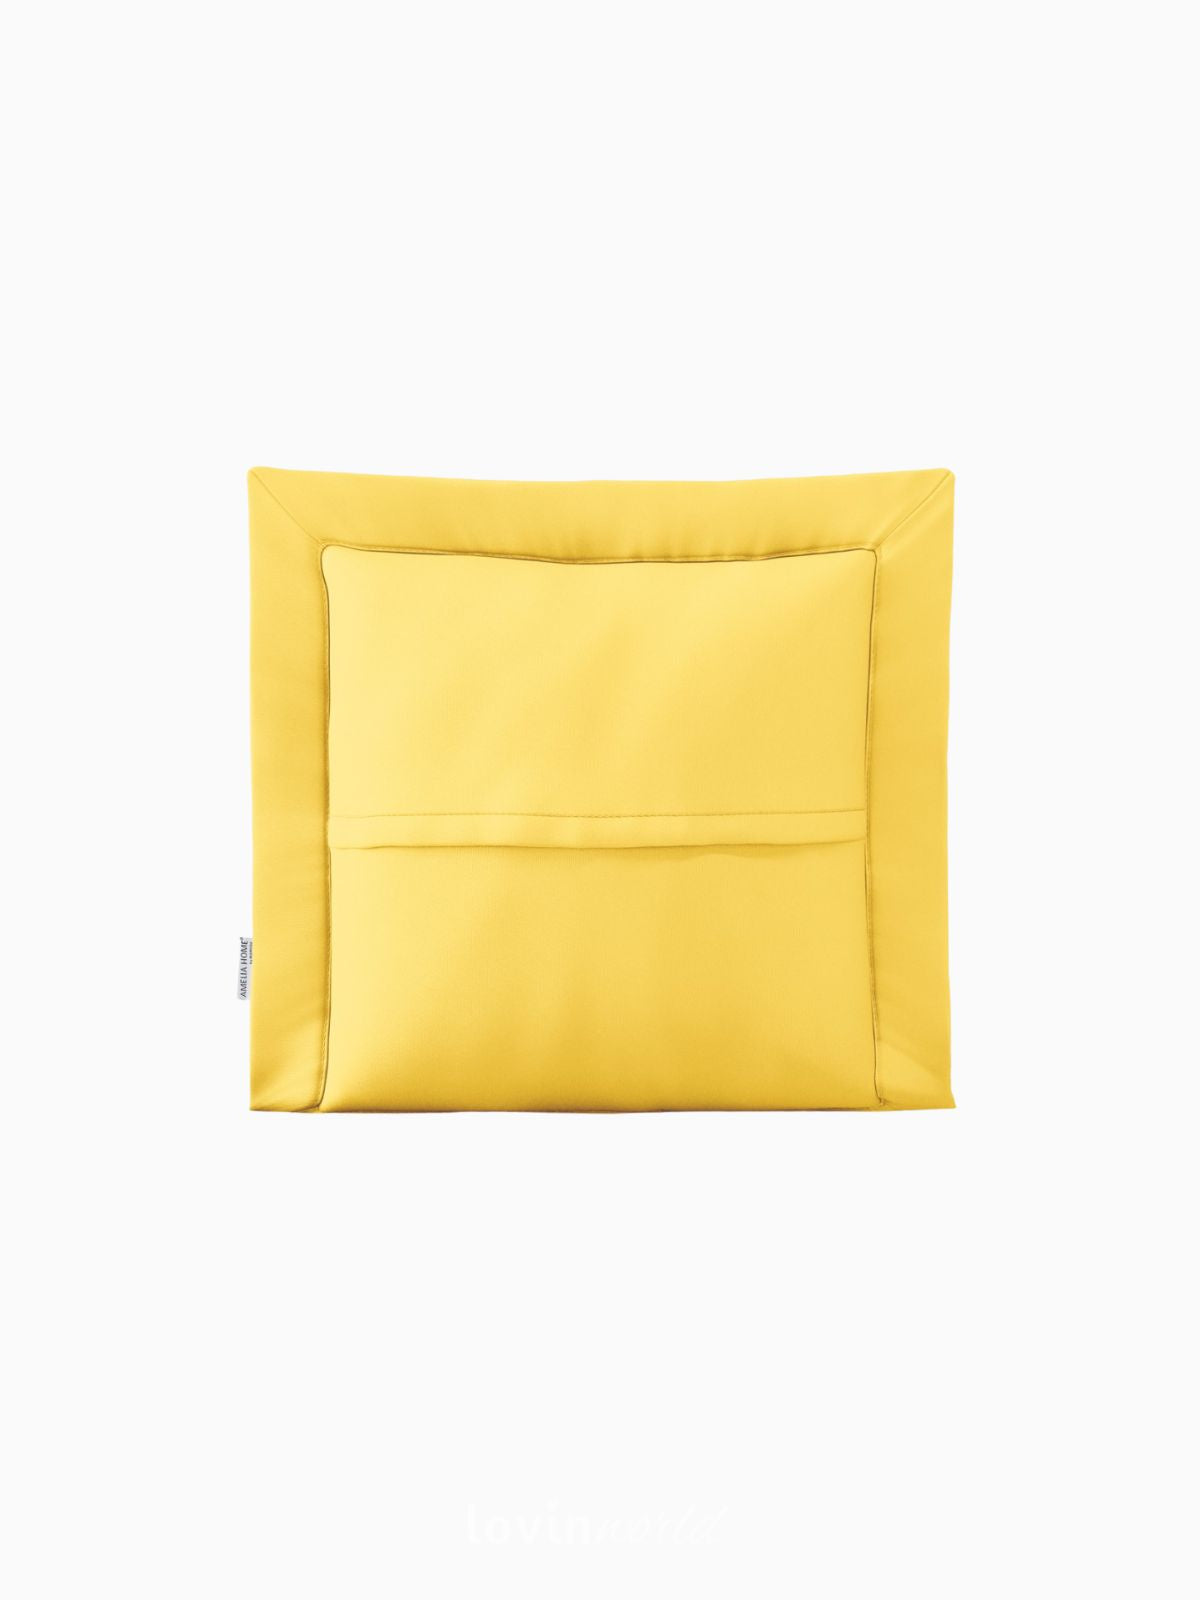 Cuscino decorativo Ophelia in colore giallo 45x45 cm.-3